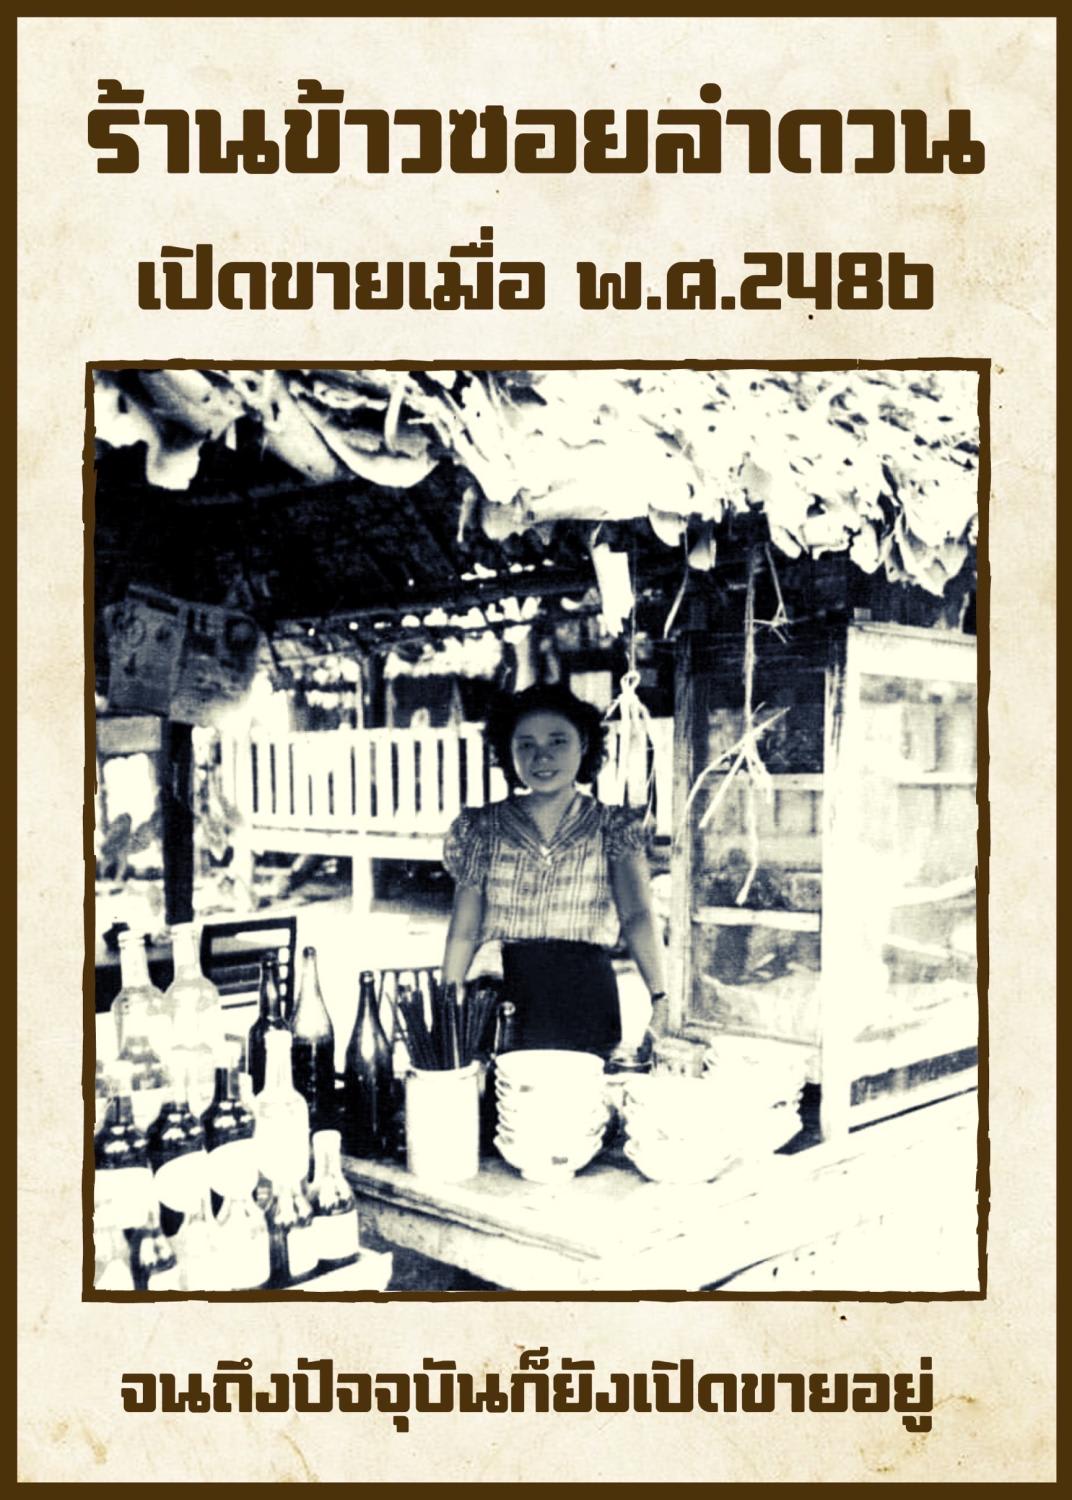 Nét độc đáo của món mì Thái Lan được đánh giá ngon nhất thế giới - Ảnh 3.